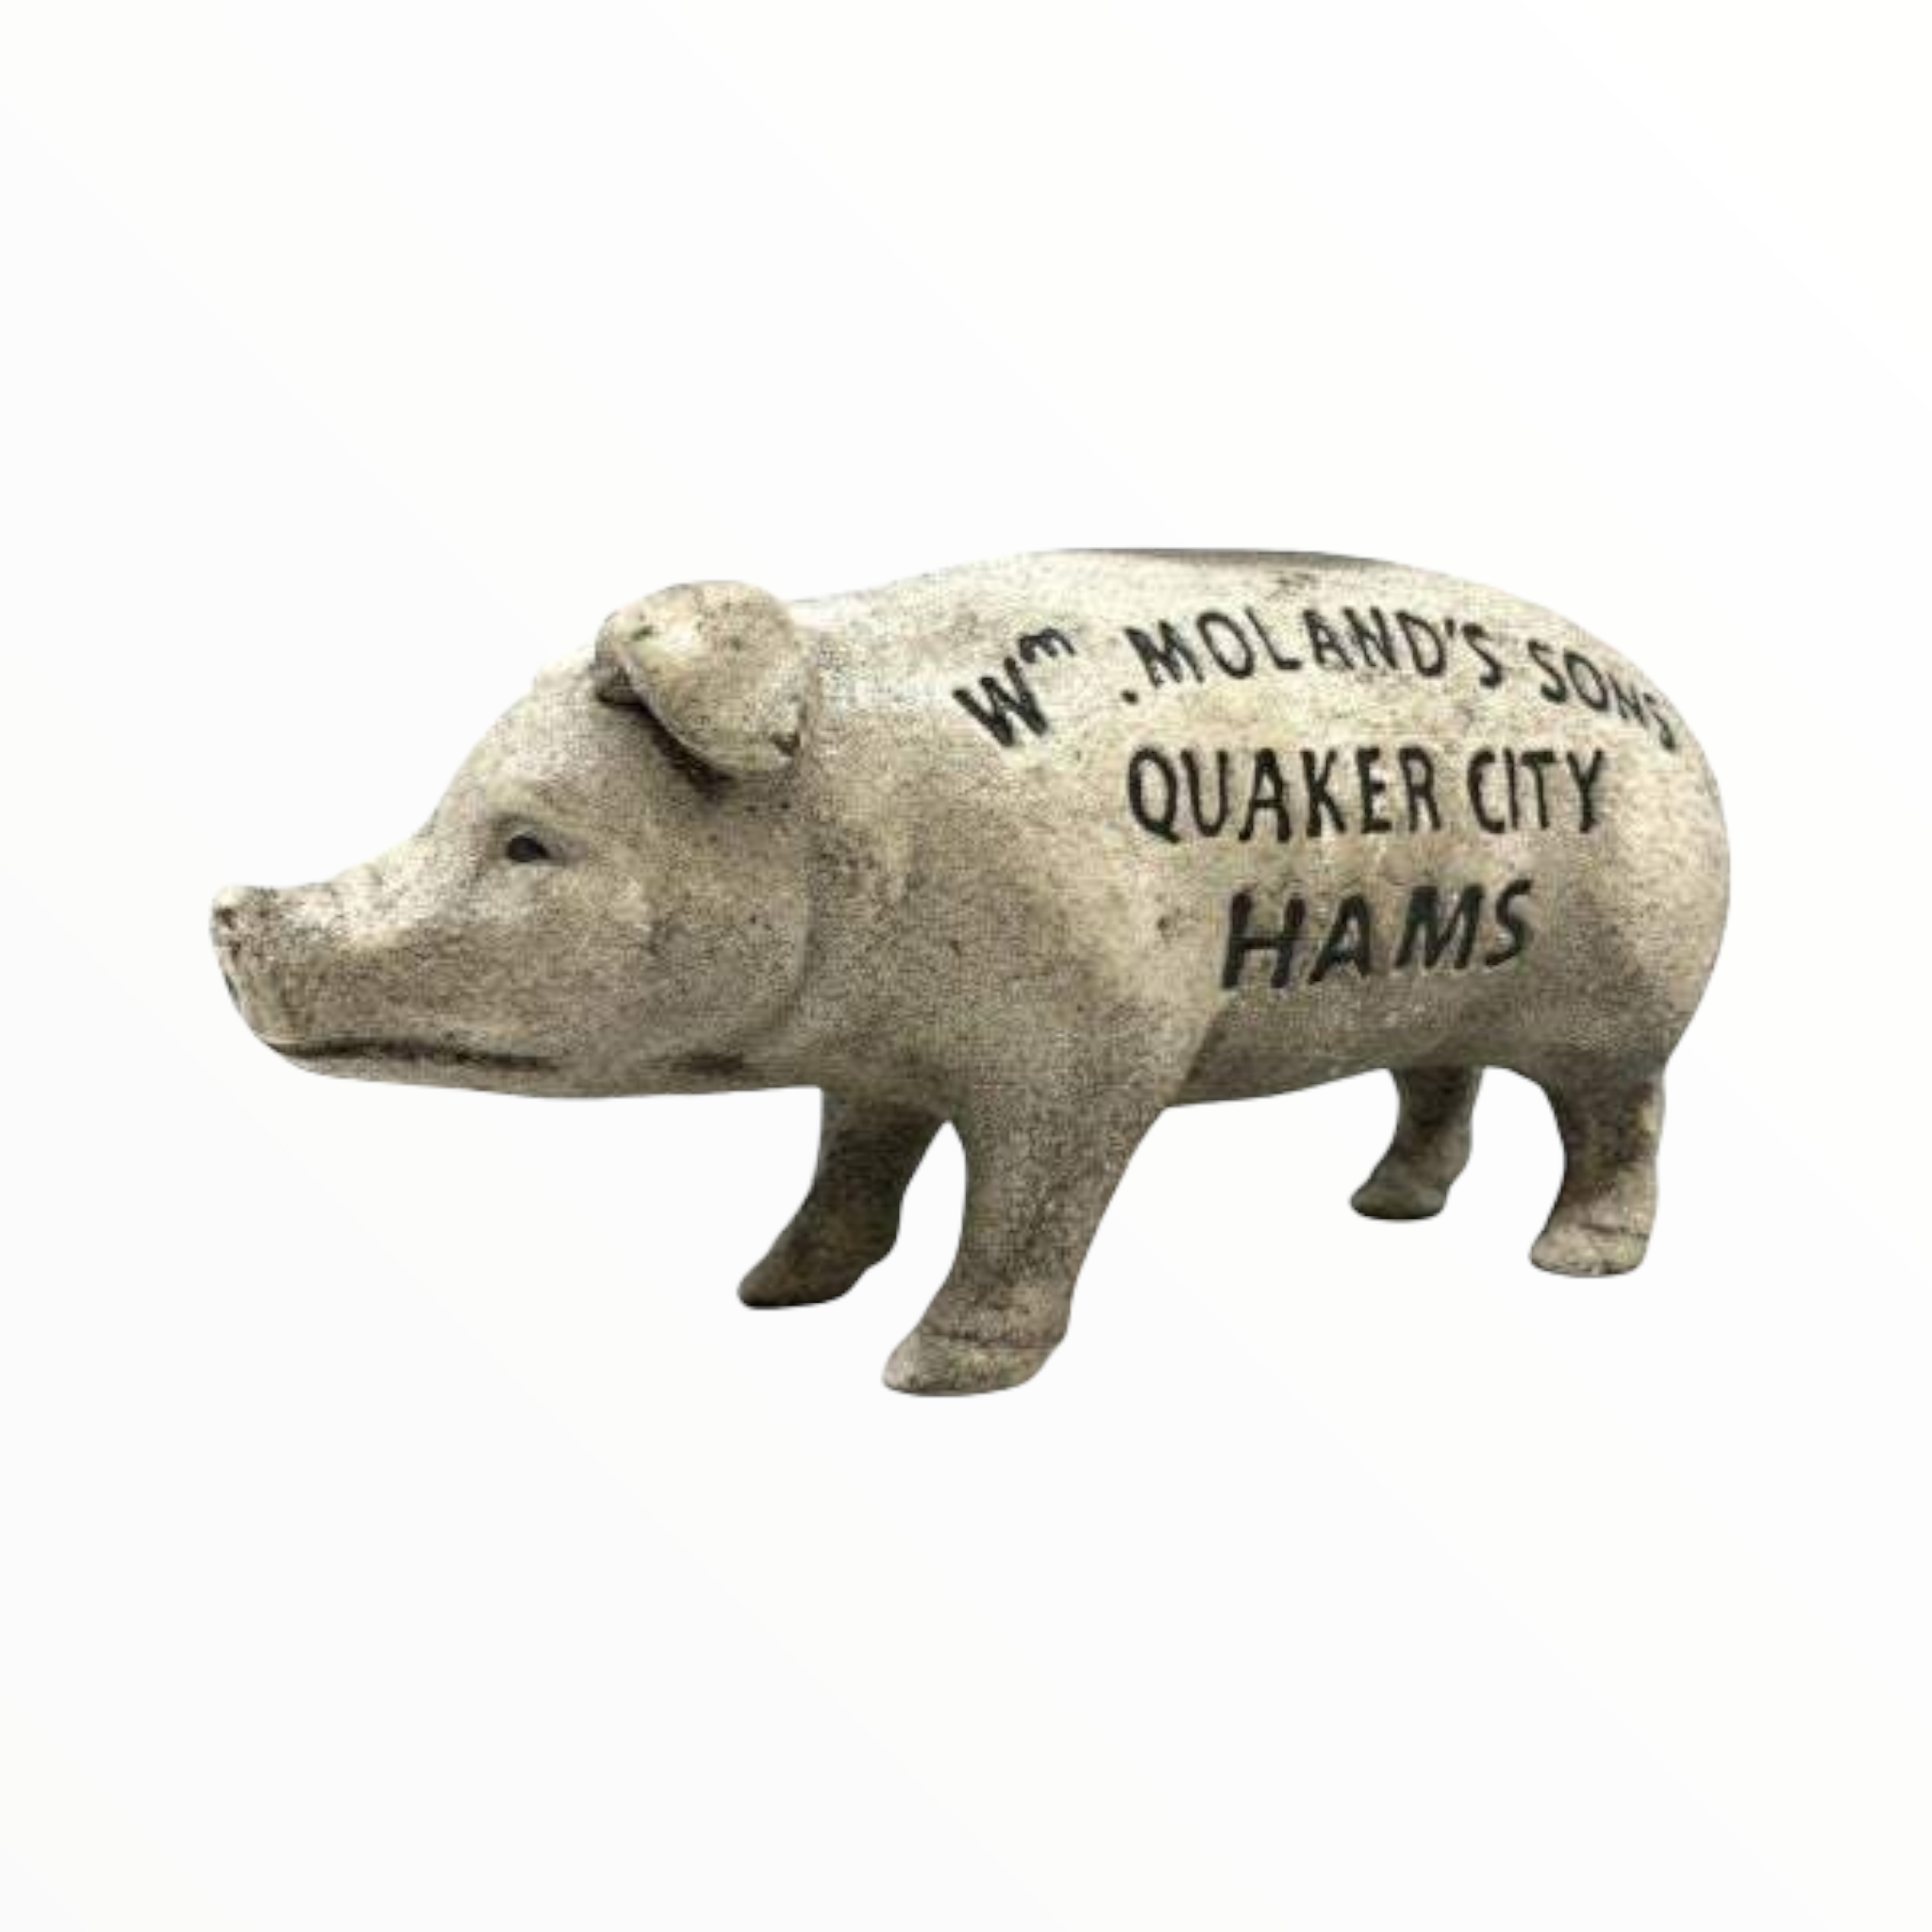 WM. Moland's Sons Quaker City Hams Cast Iron Piggy Bank